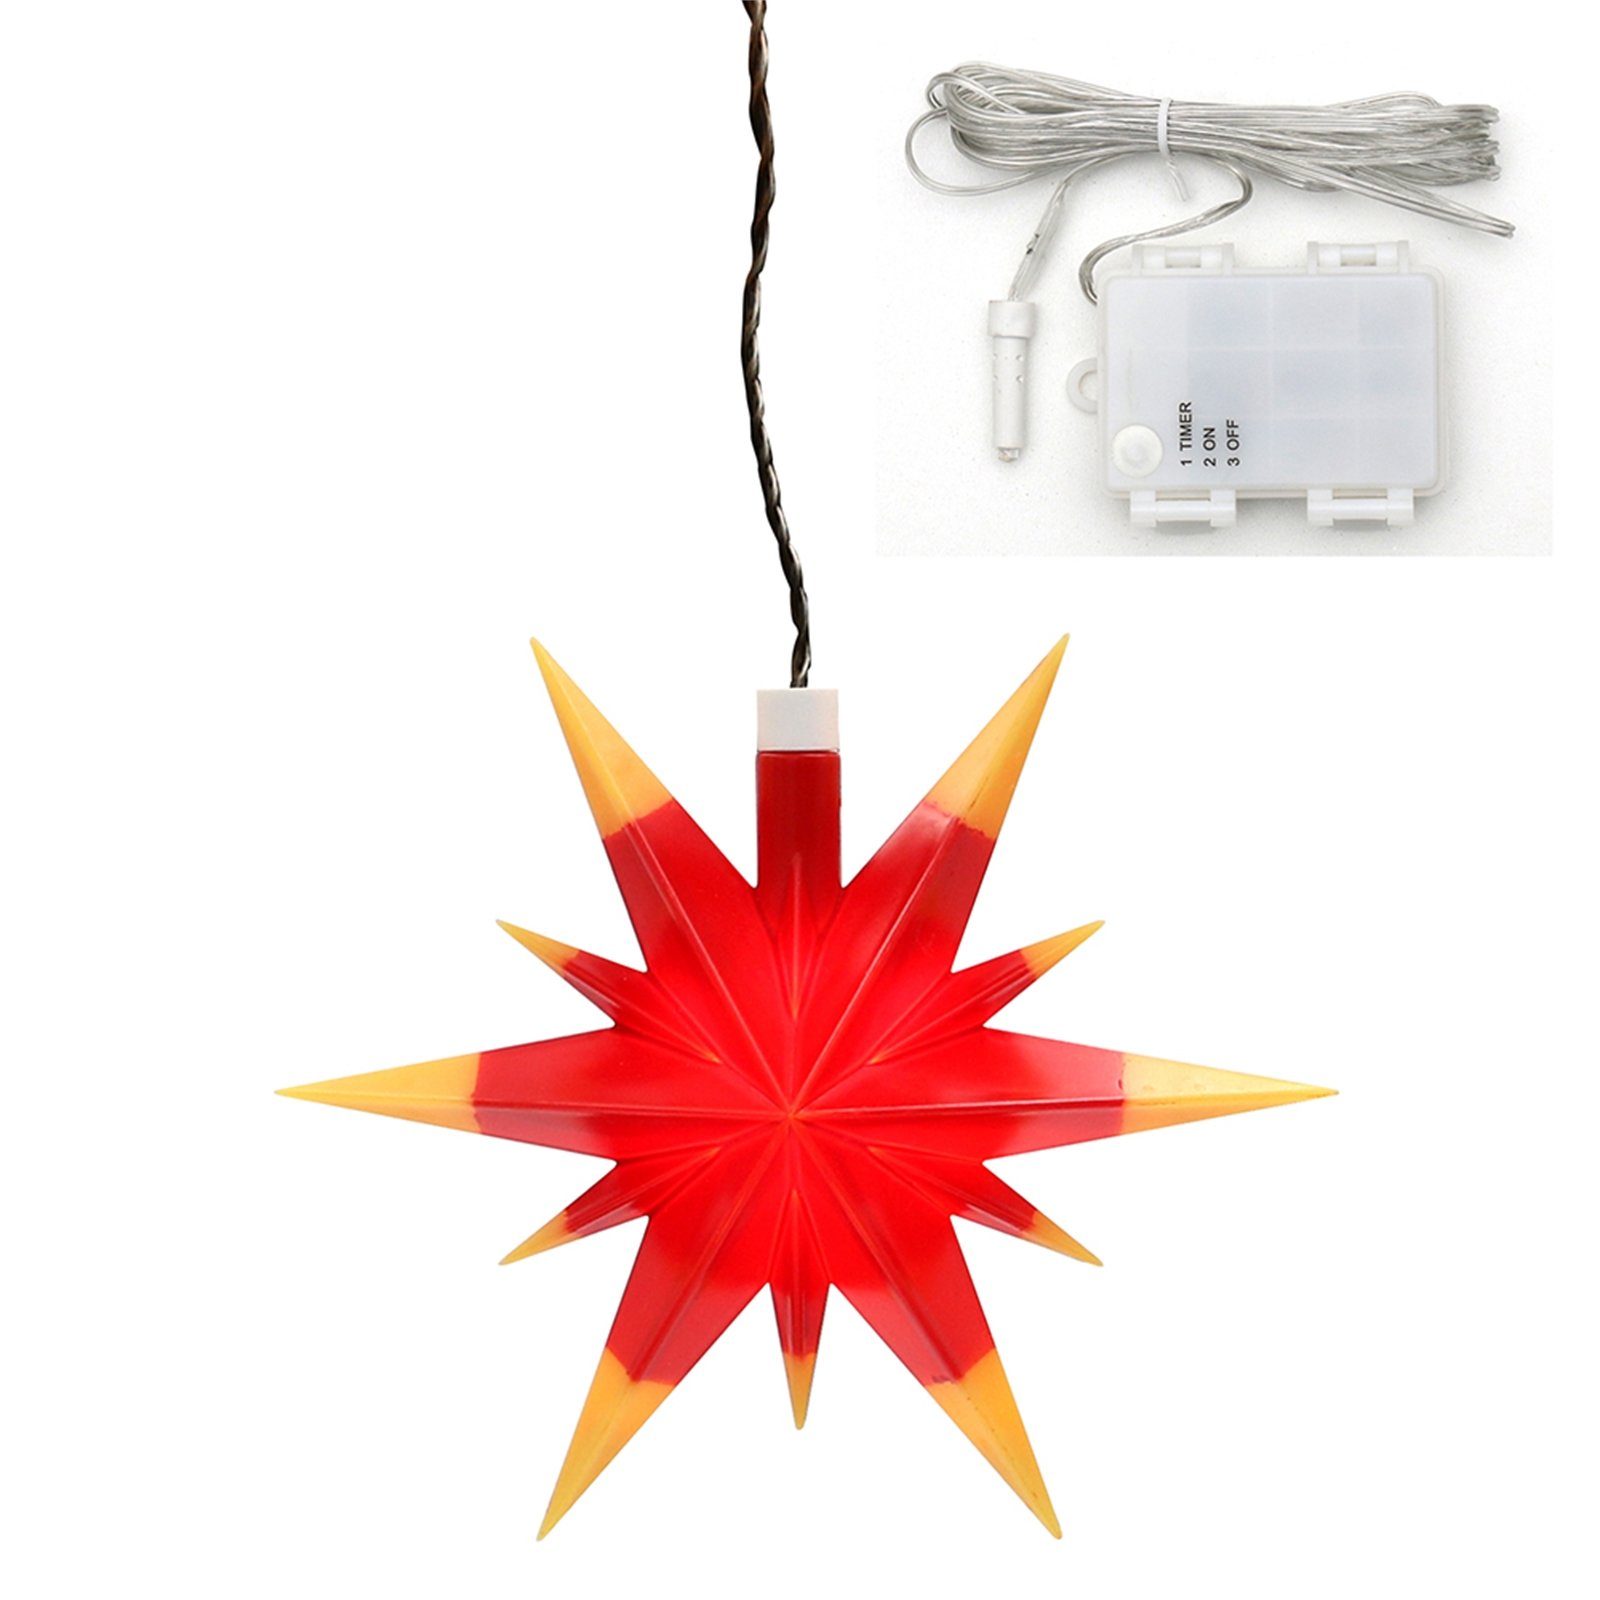 SIGRO LED Stern Weihnachtsstern mit Timer Rot/Gelb, LED, Fensterstern beleuchtet inkl. Batteriefach